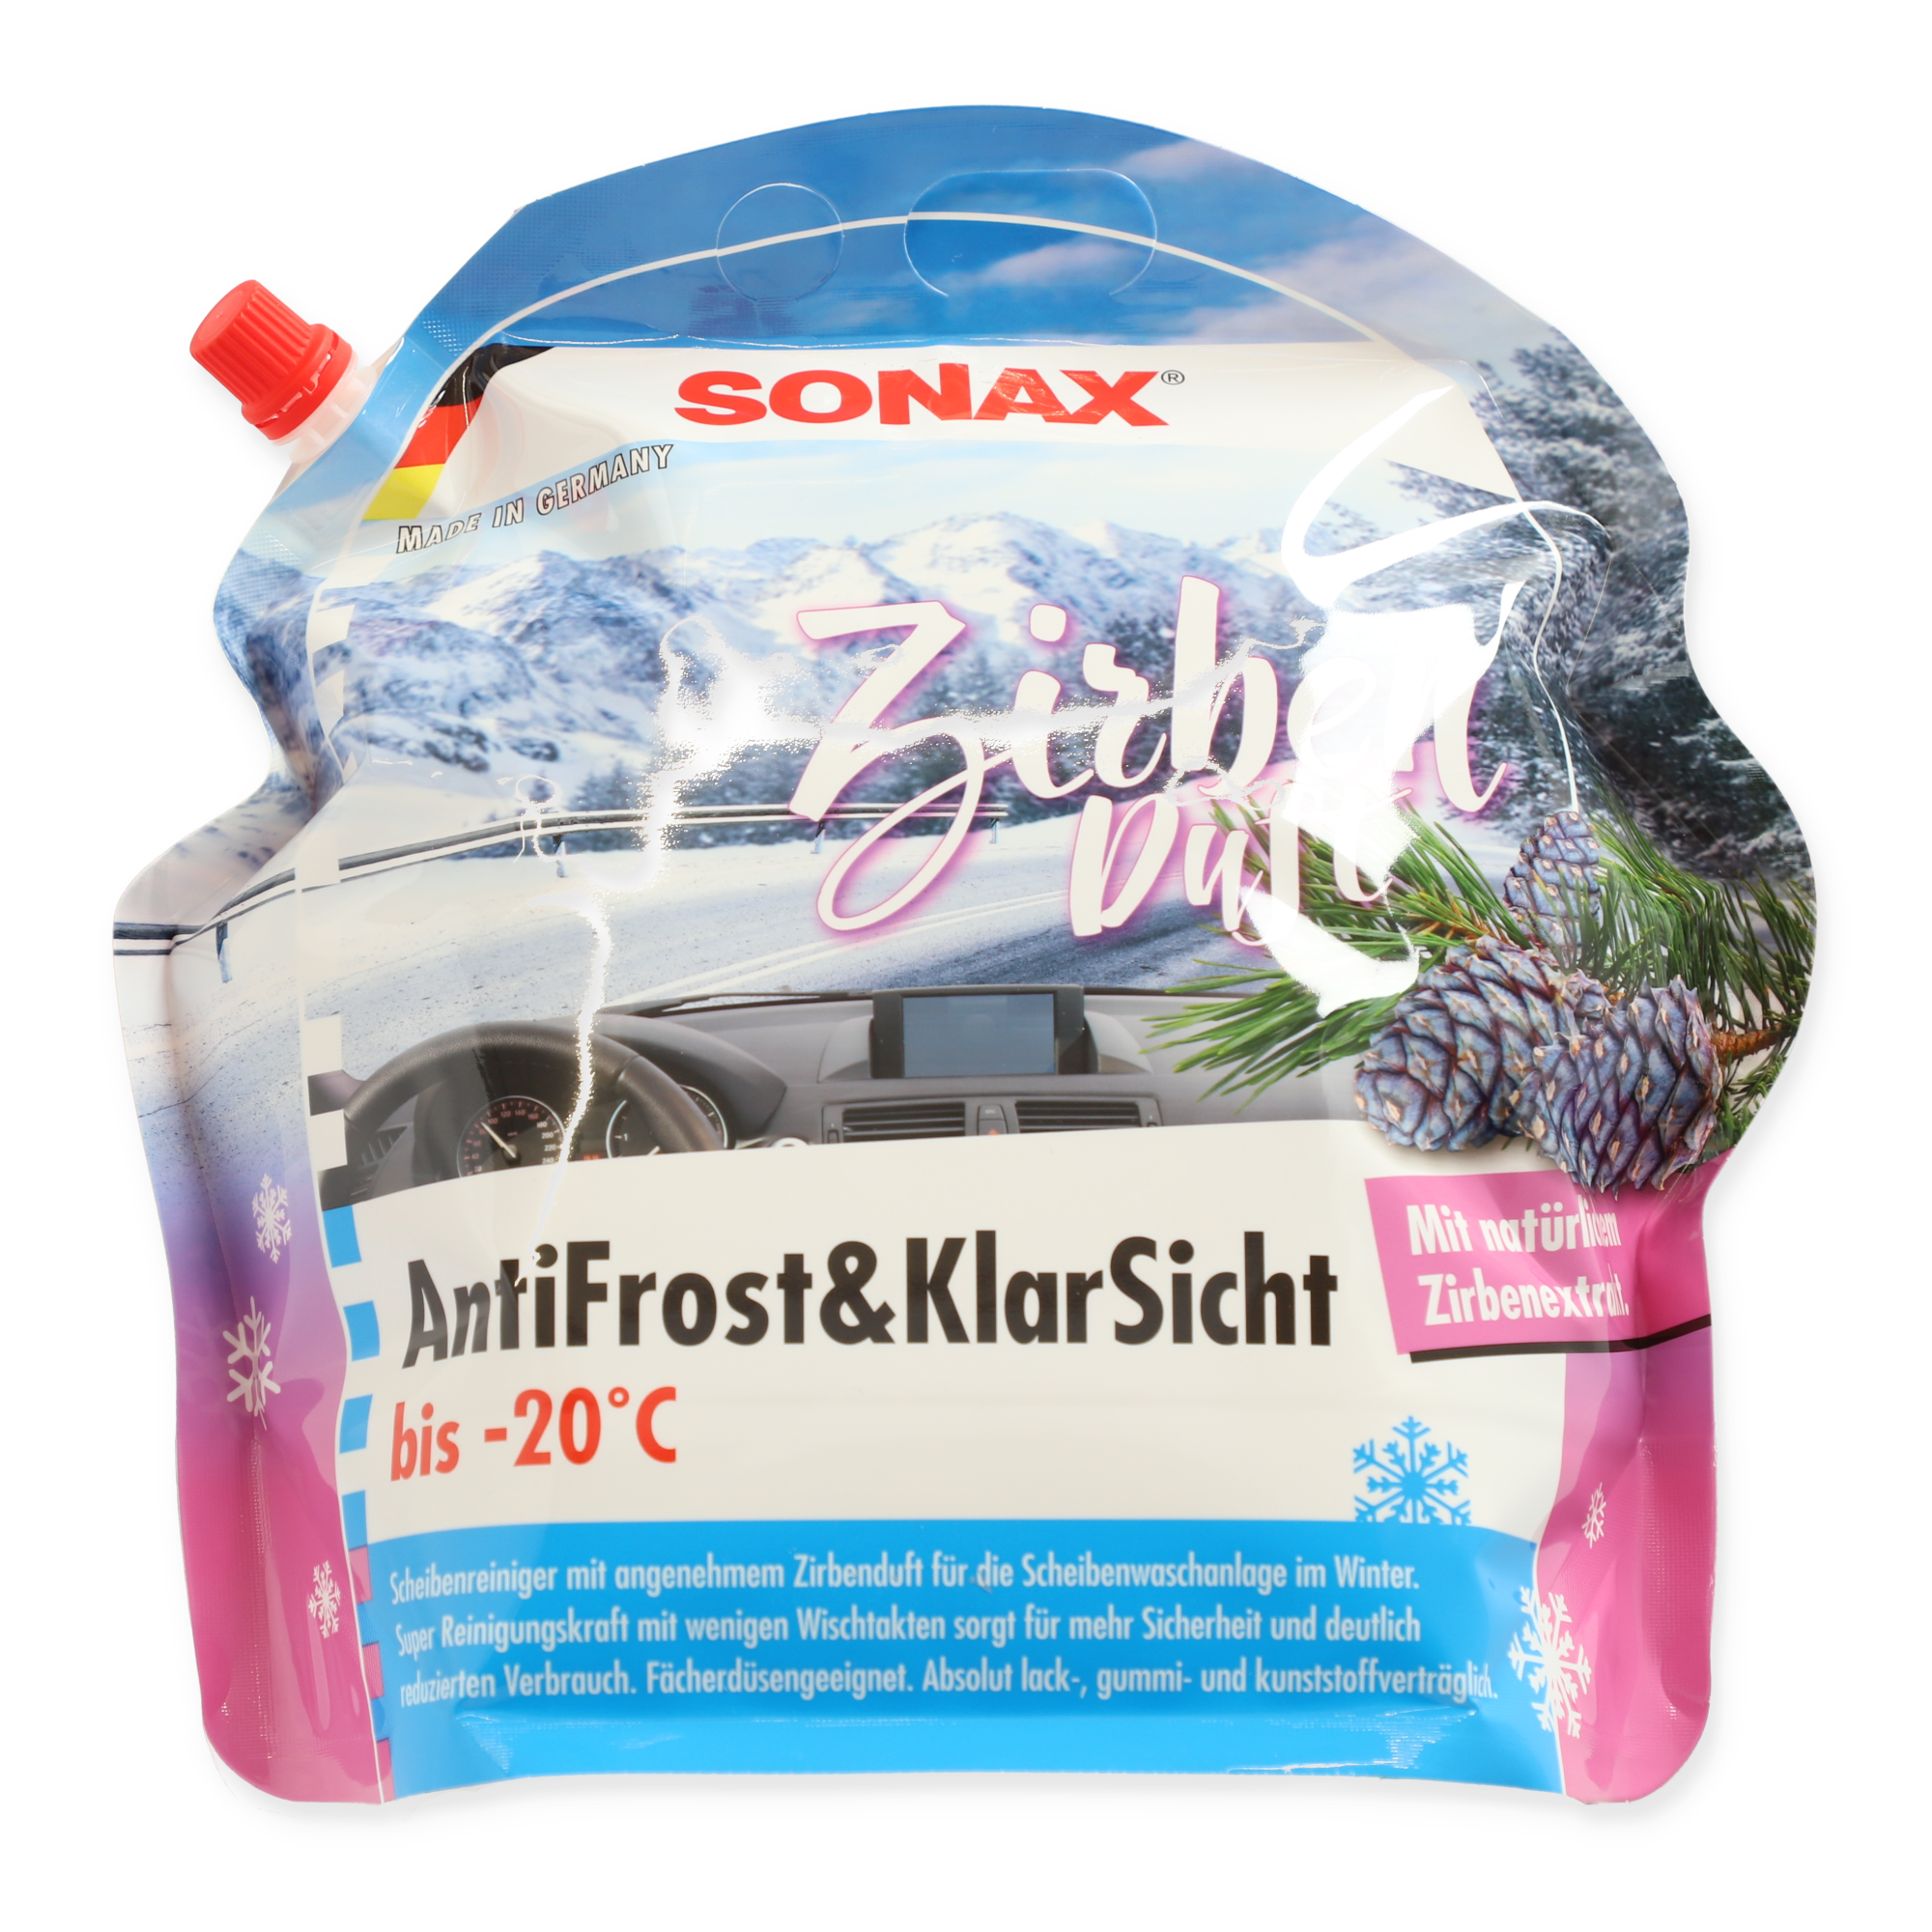 Scheibenreiniger 'Antifrost+Klarsicht' Zirbe bis -20 °C 3 l + product picture